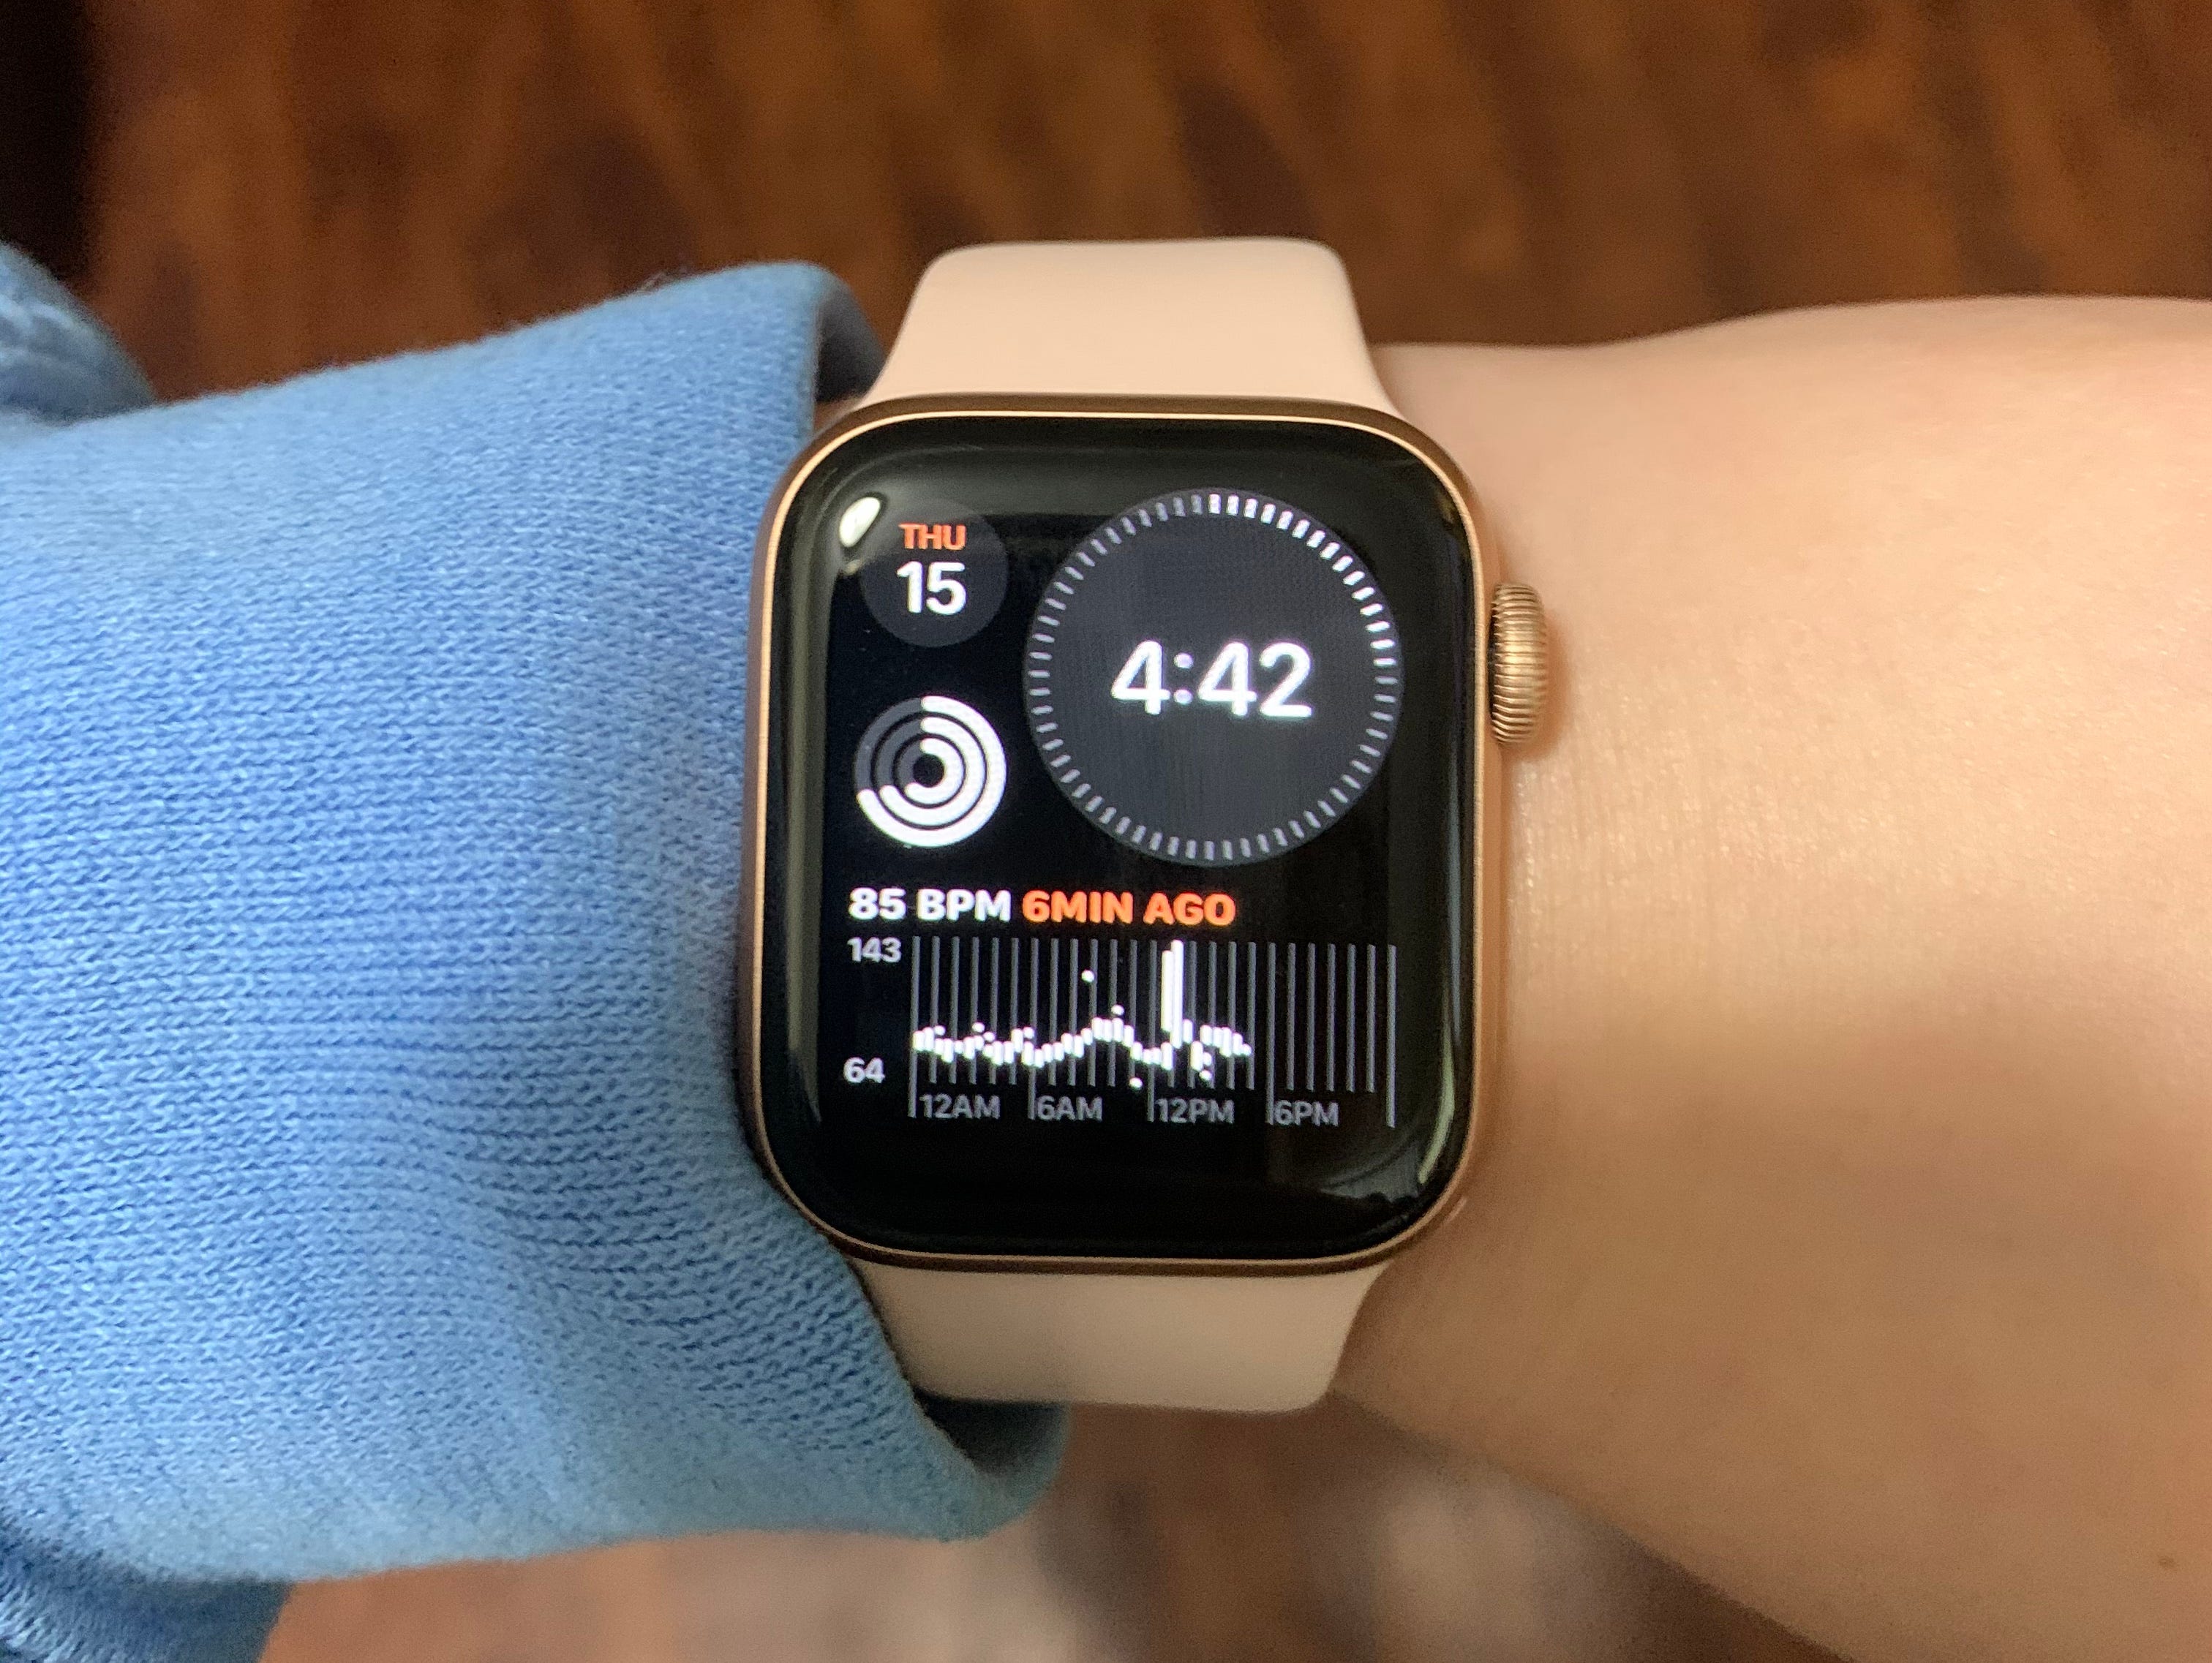 Person's wrist wearing an Apple Watch SE